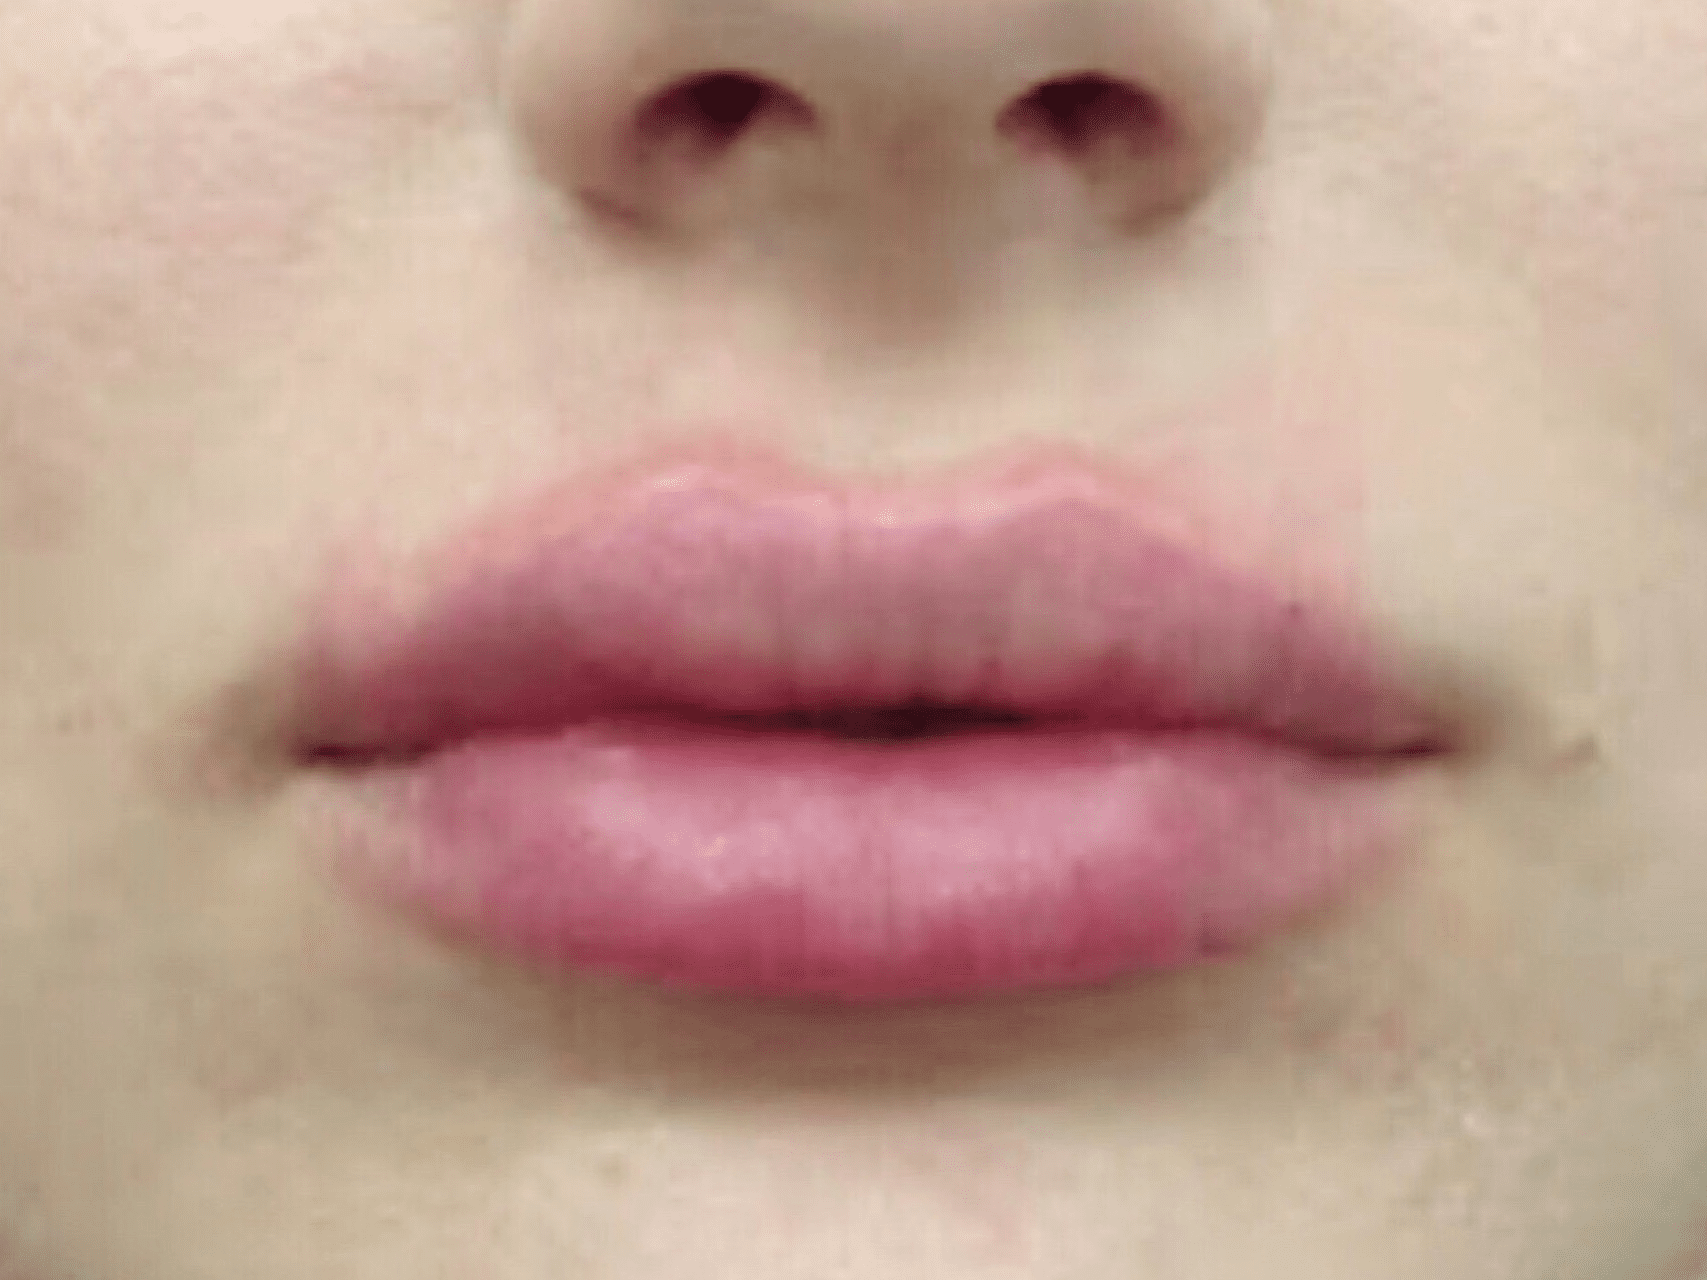 Lip Augmentation Patient Photo - Case 8288 - after view